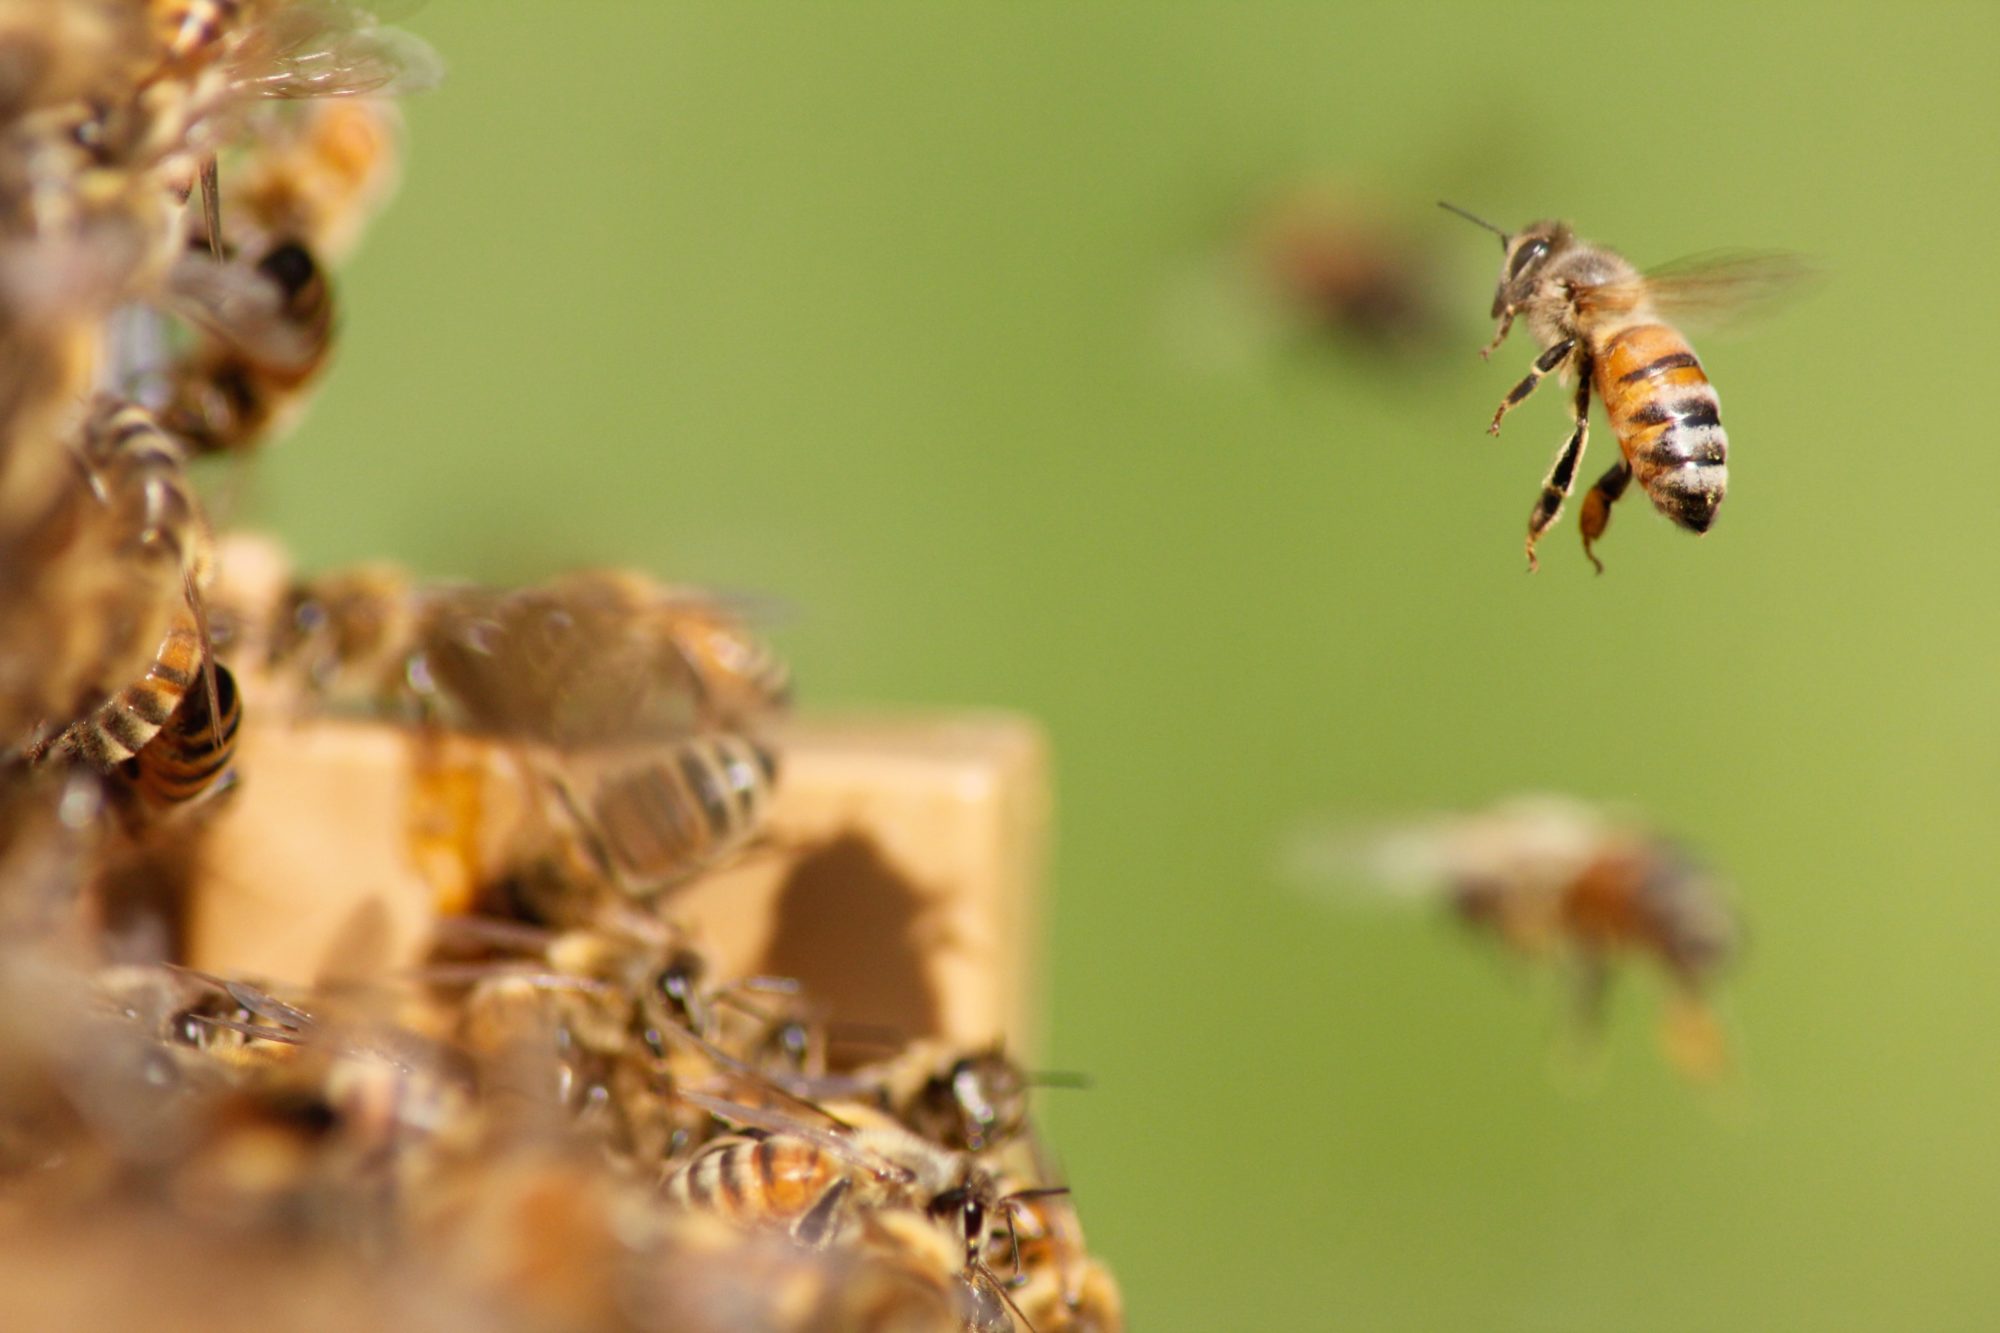 Concello de Muras | Curso gratuíto de iniciación á apicultura | 